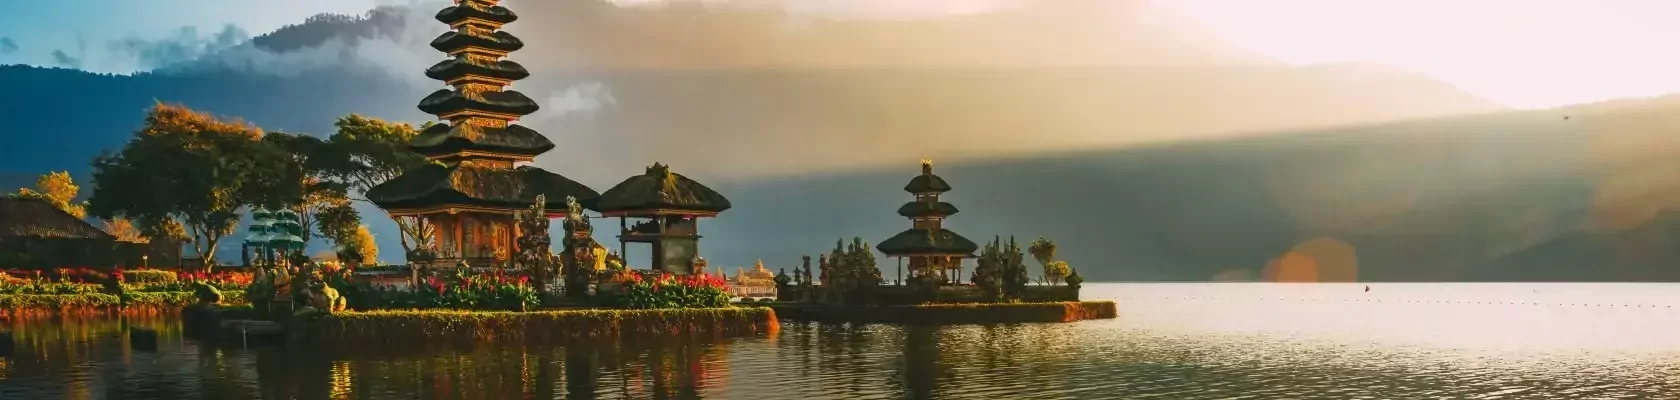 Ulun Danu tempel, Bali